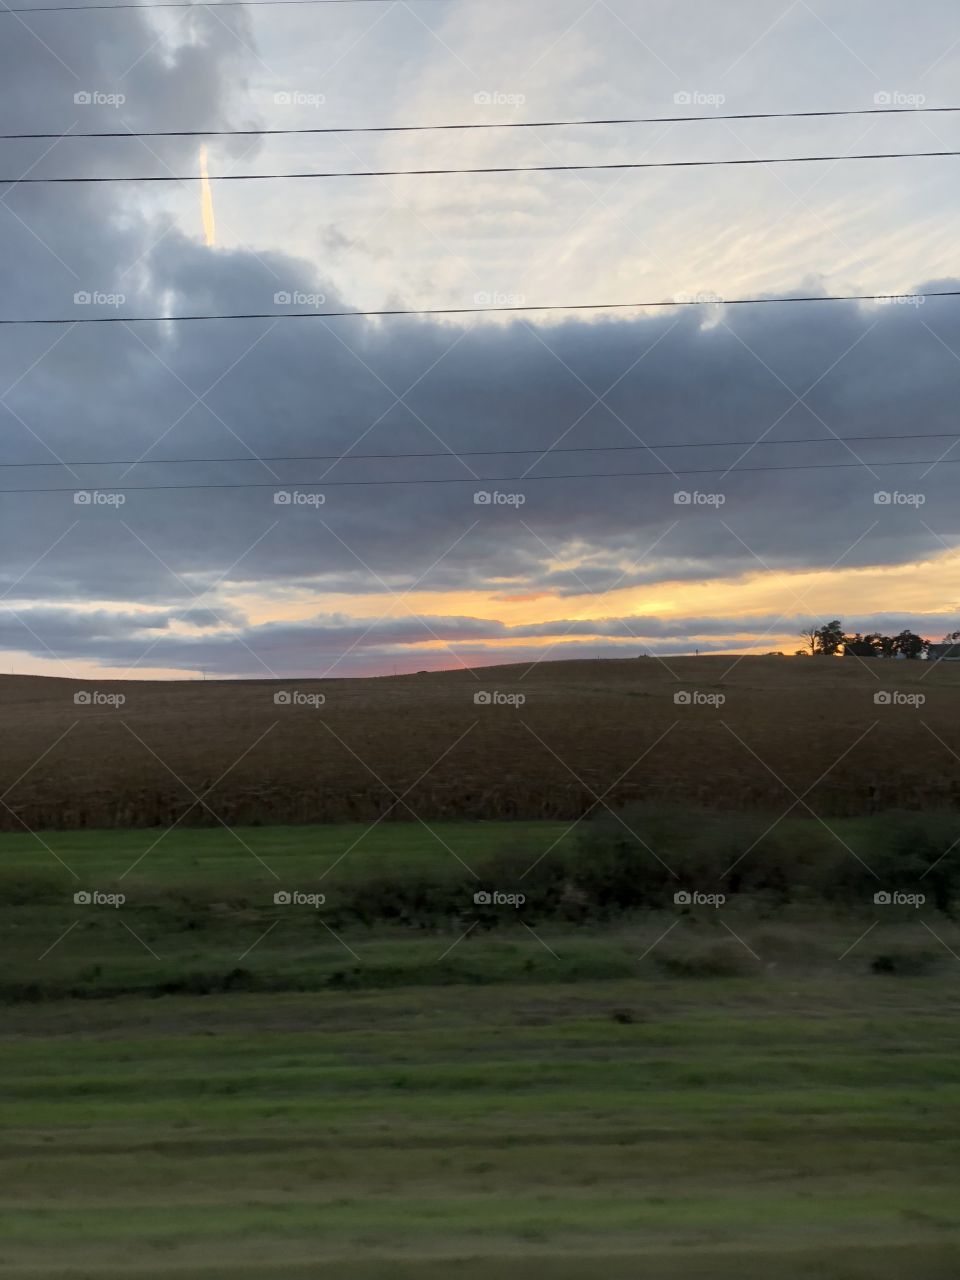 Crops at dusk